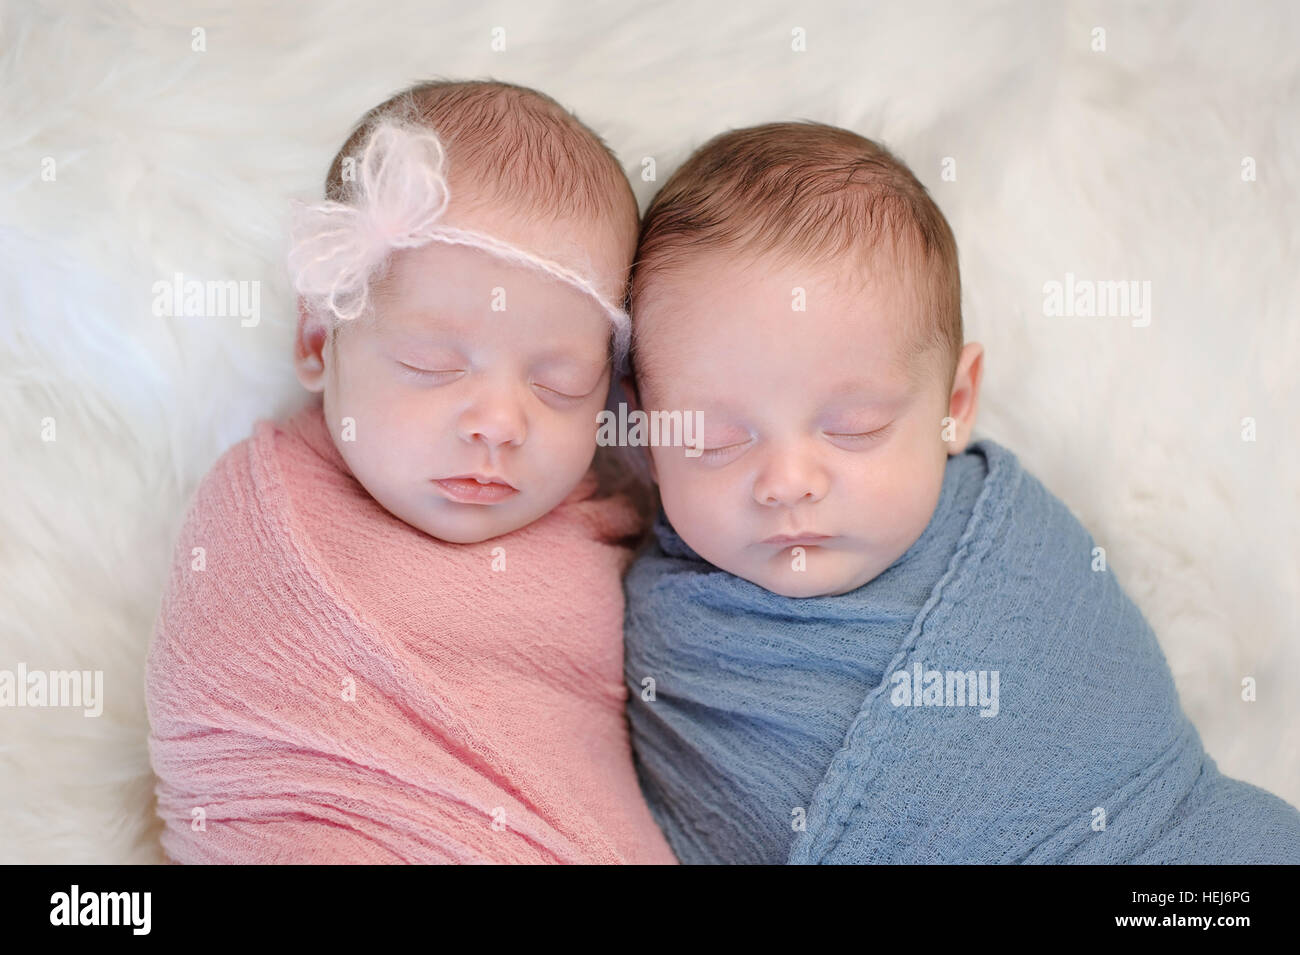 Zwei Monate alt, brüderlichen Twin, Bruder und Schwester Babys gepuckt in rosa und blau Wraps und schlafen auf einem Schaffell-Teppich. Stockfoto